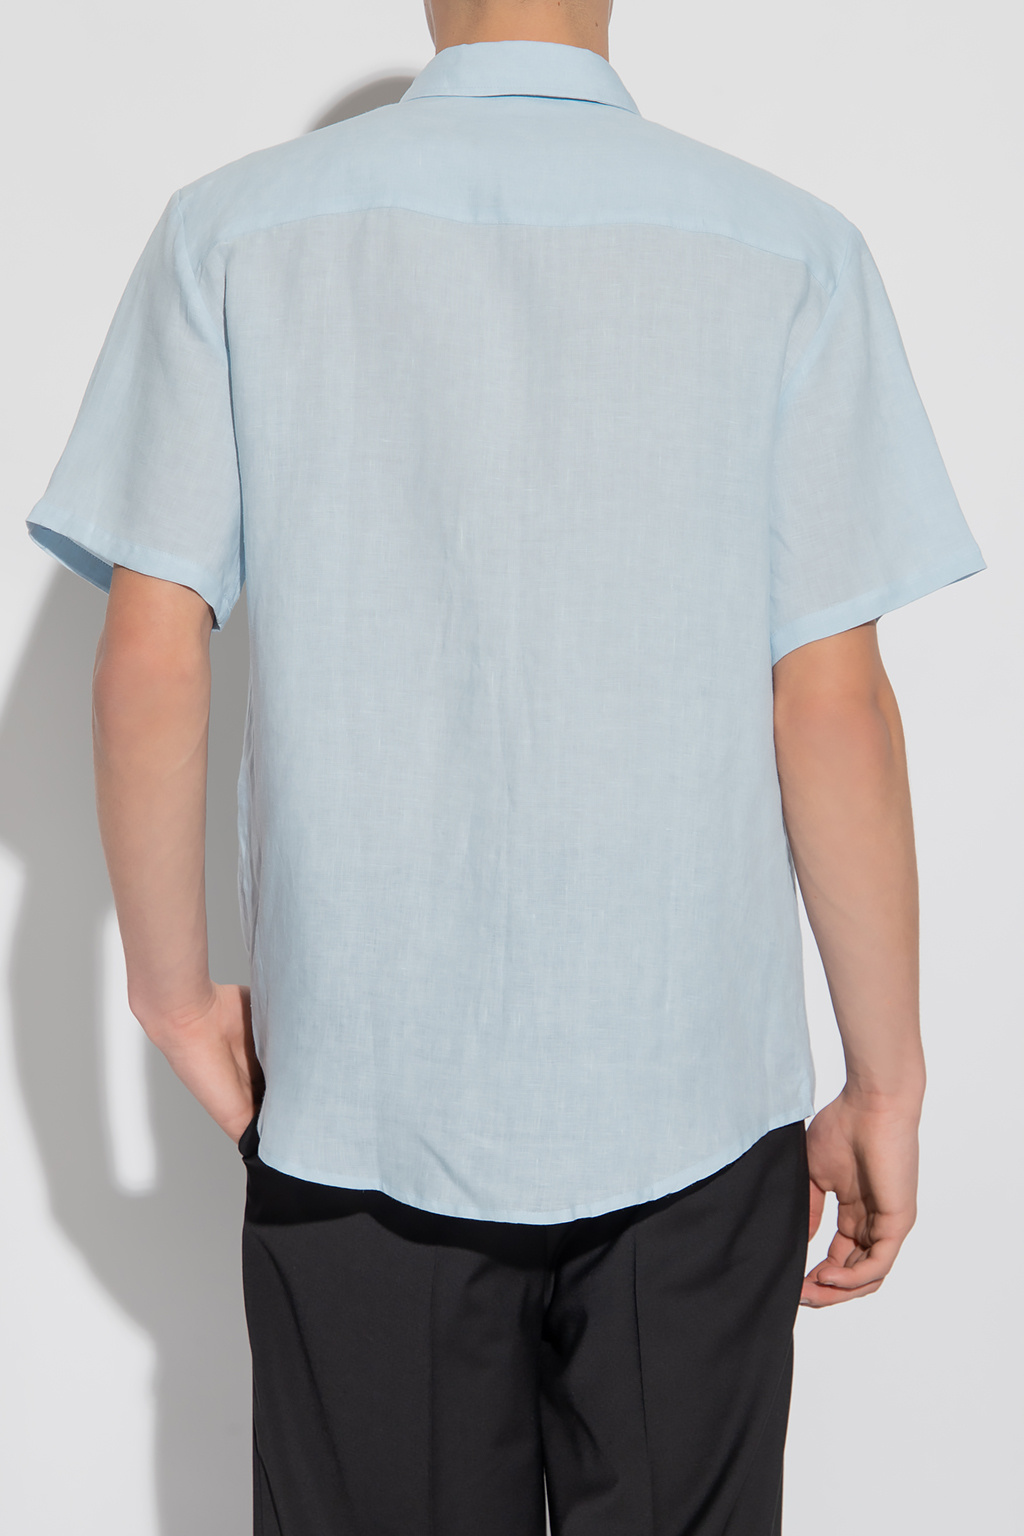 A.P.C. ‘Bellini’ linen shirt